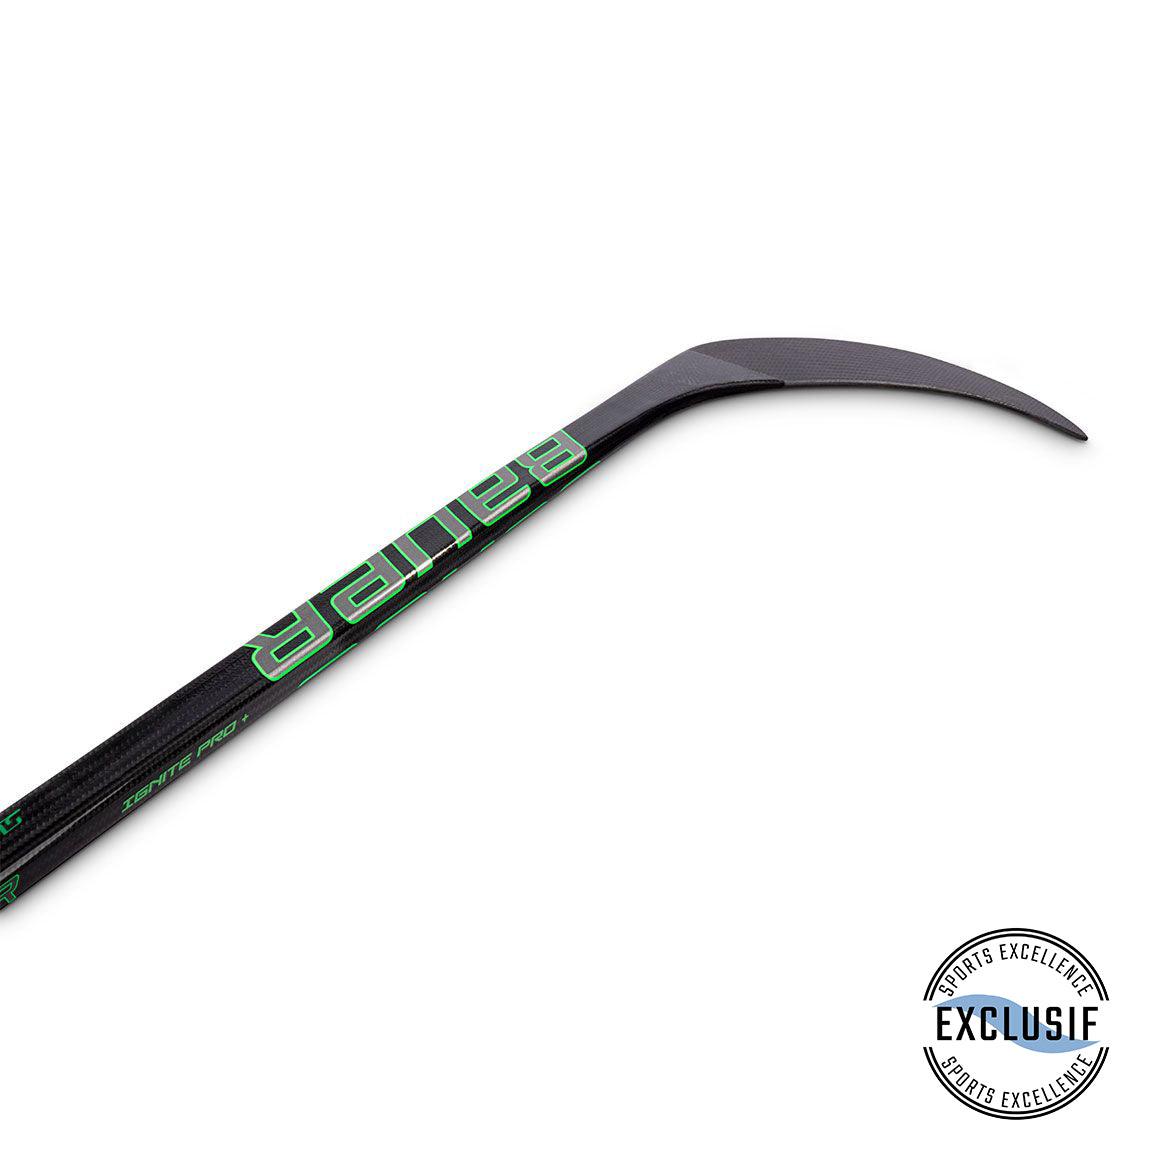 Supreme Ignite Pro+ Hockey Stick - Junior